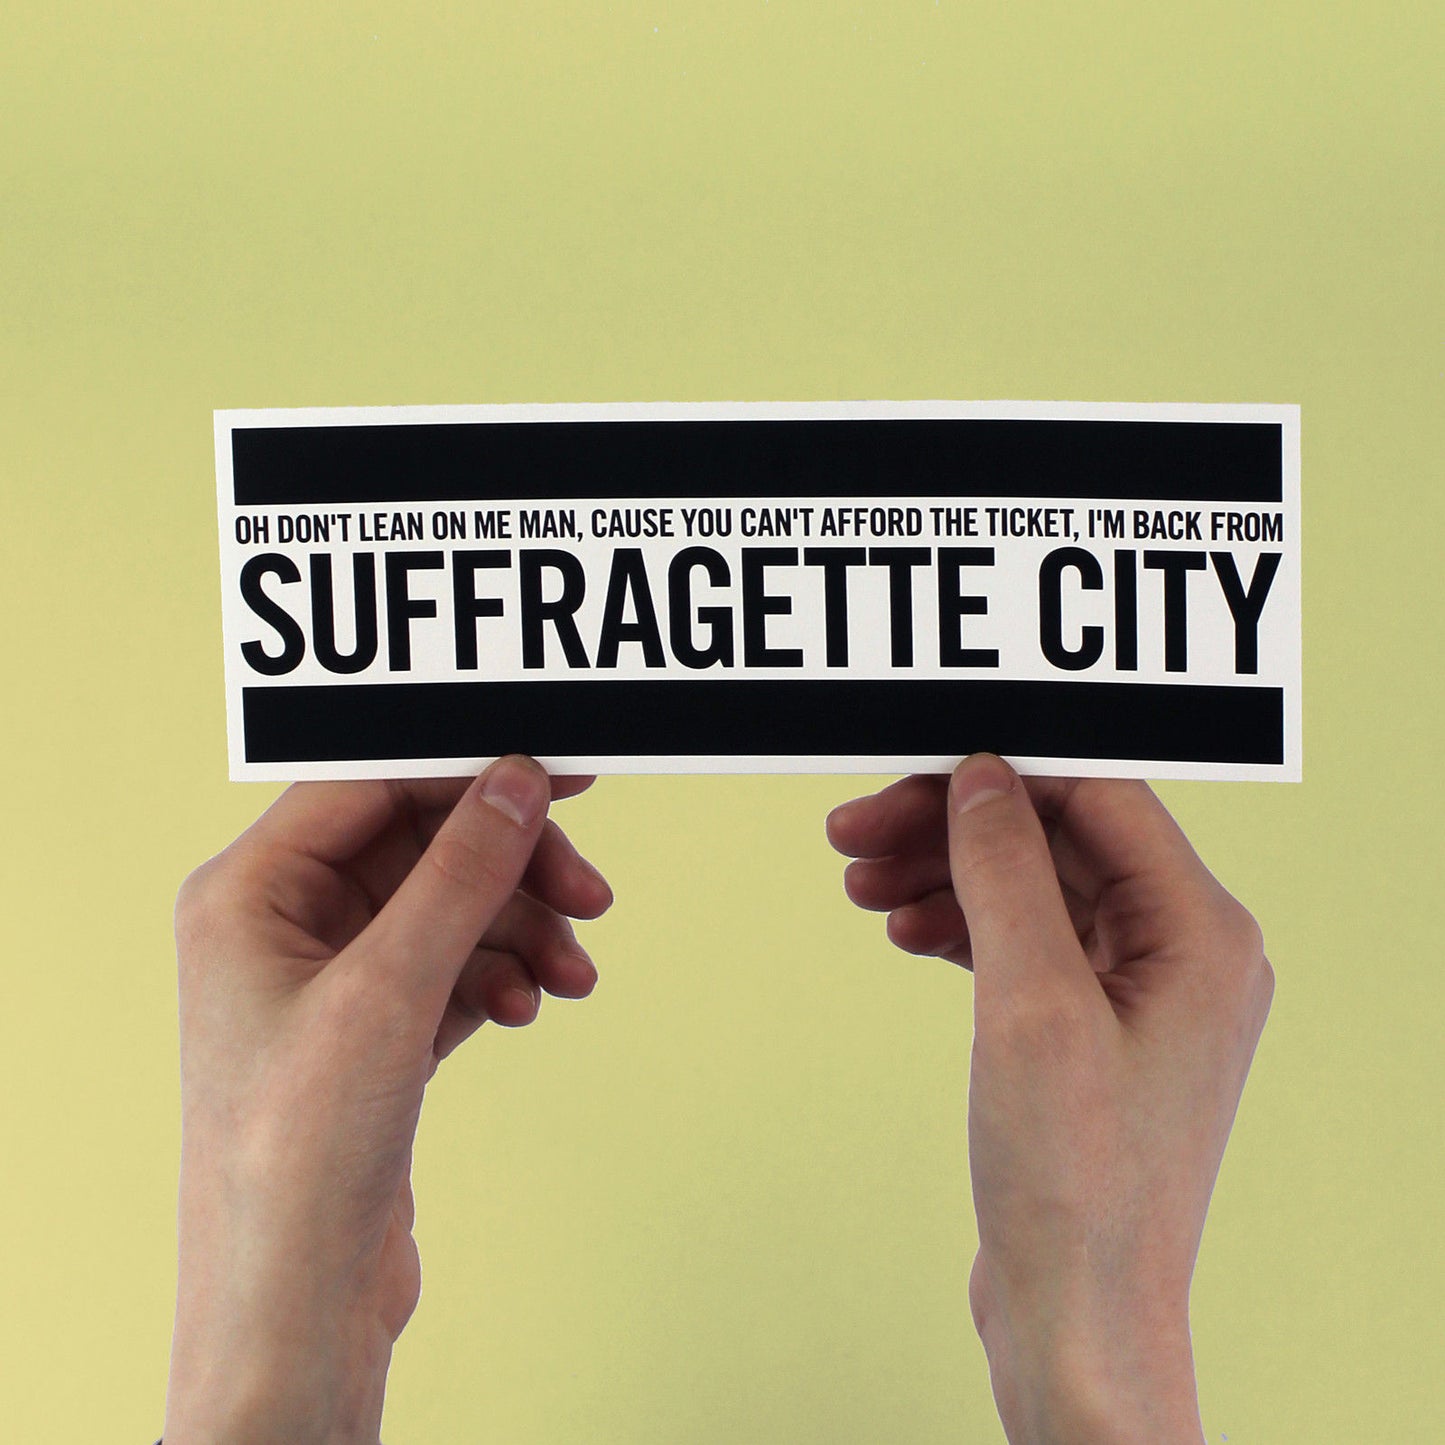 David Bowie "Suffragette City" Lyric Bumper Sticker